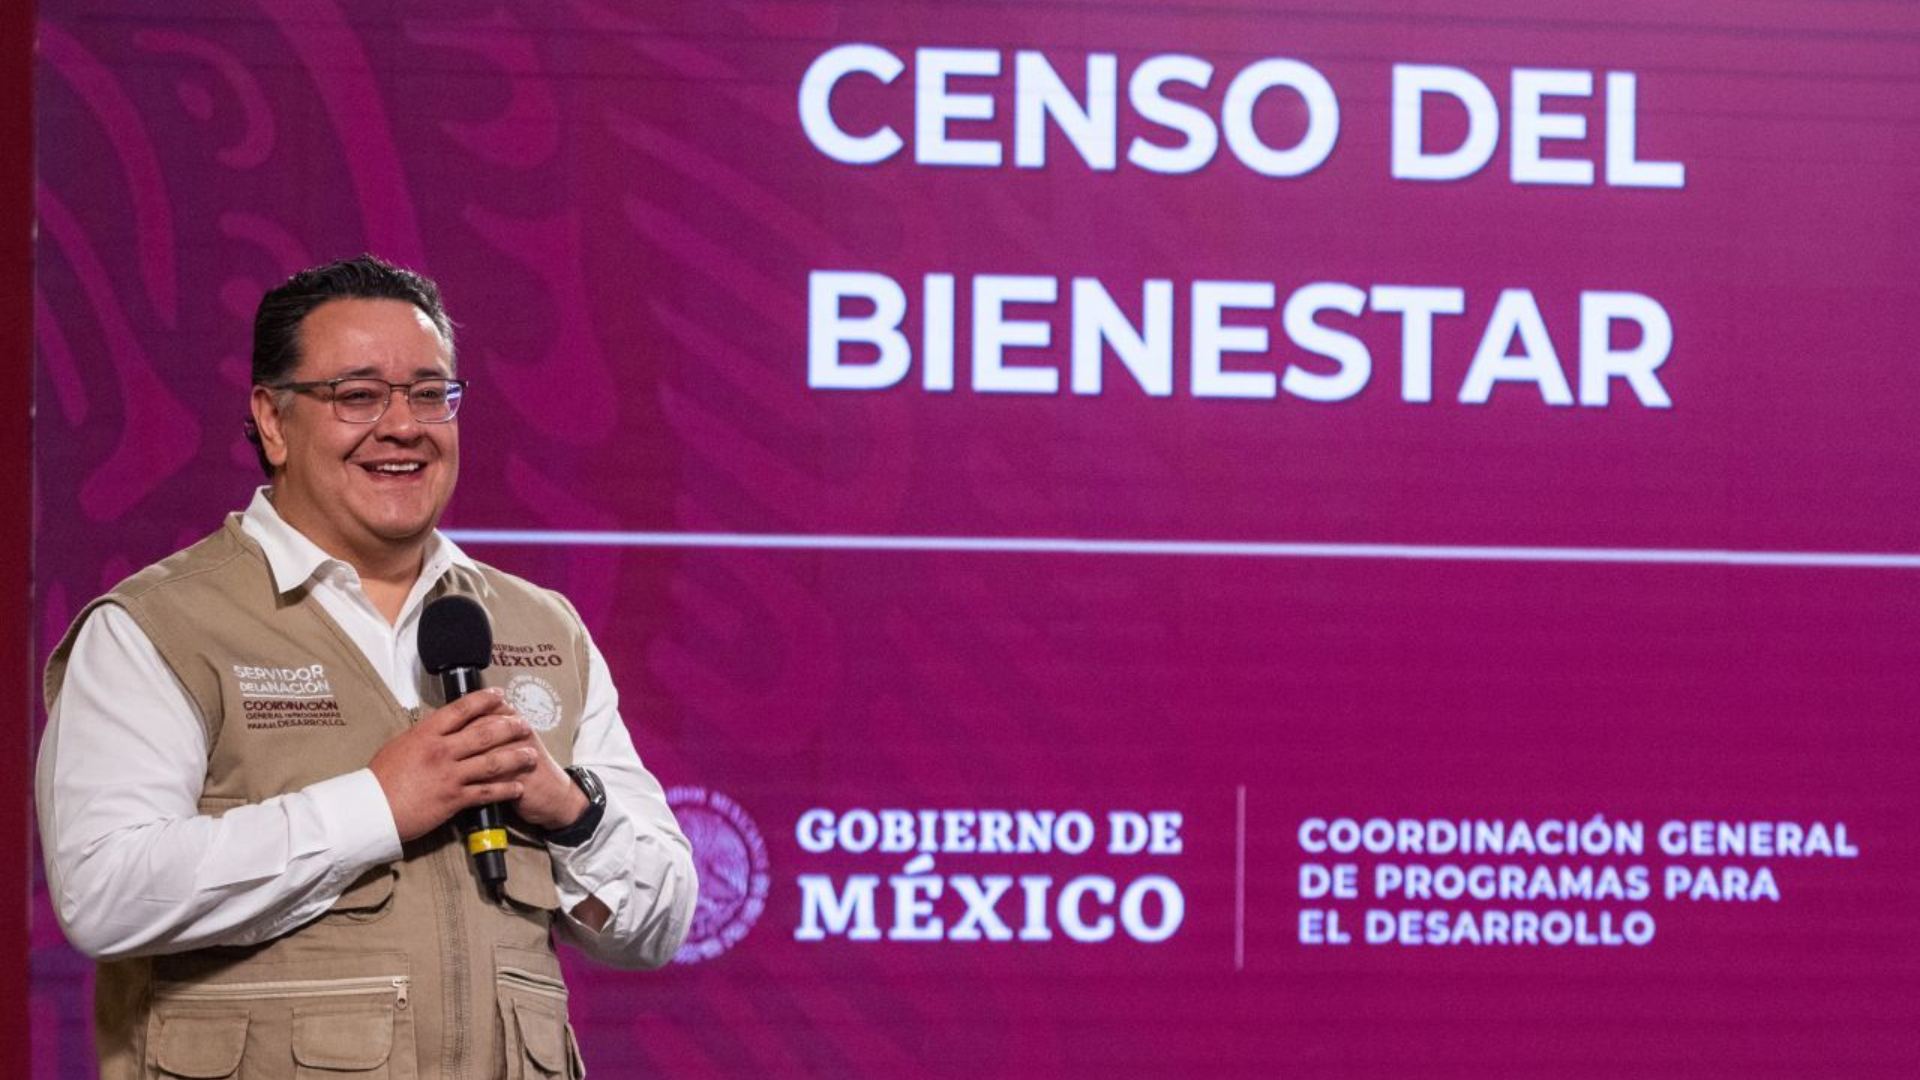 El periodista aseguró que Gabriel García Hernández, ex operador financiero y electoral de AMLO ha estado involucrado en casos de impunidad (Foto: Cuartoscuro).